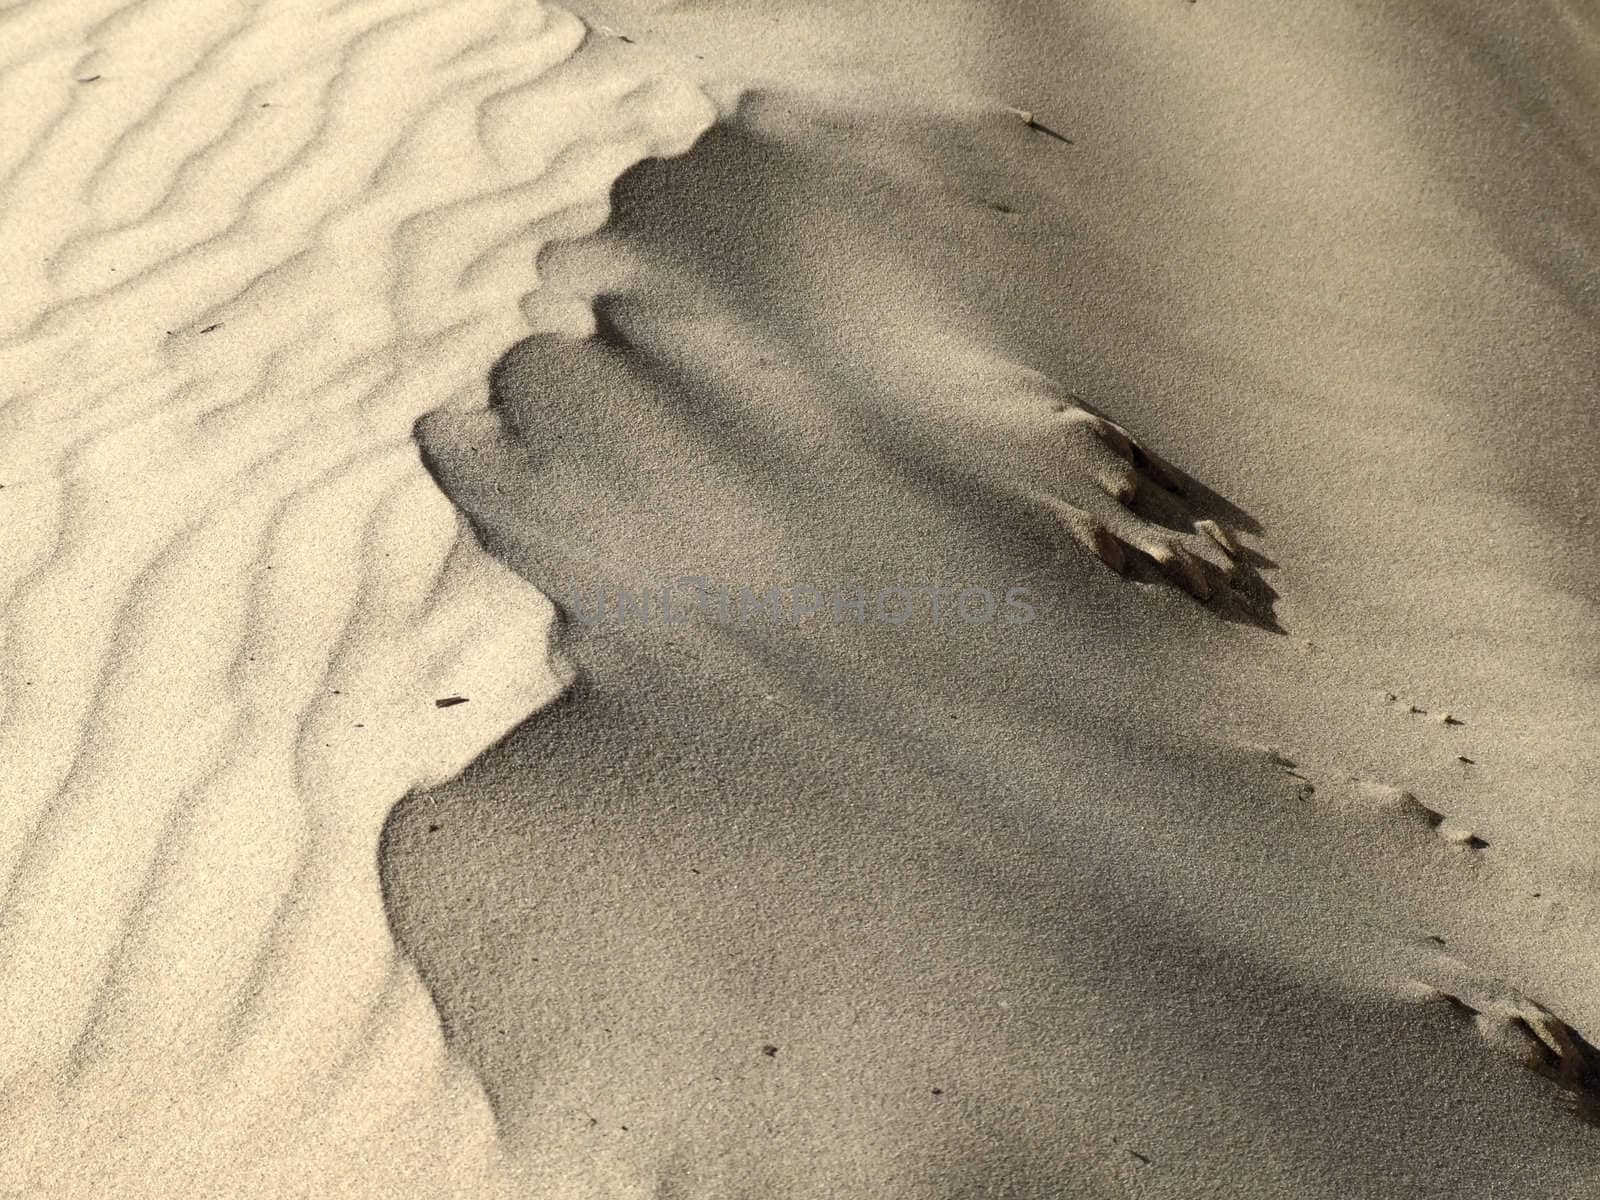 Detail of ridge or peak of desert sand dune